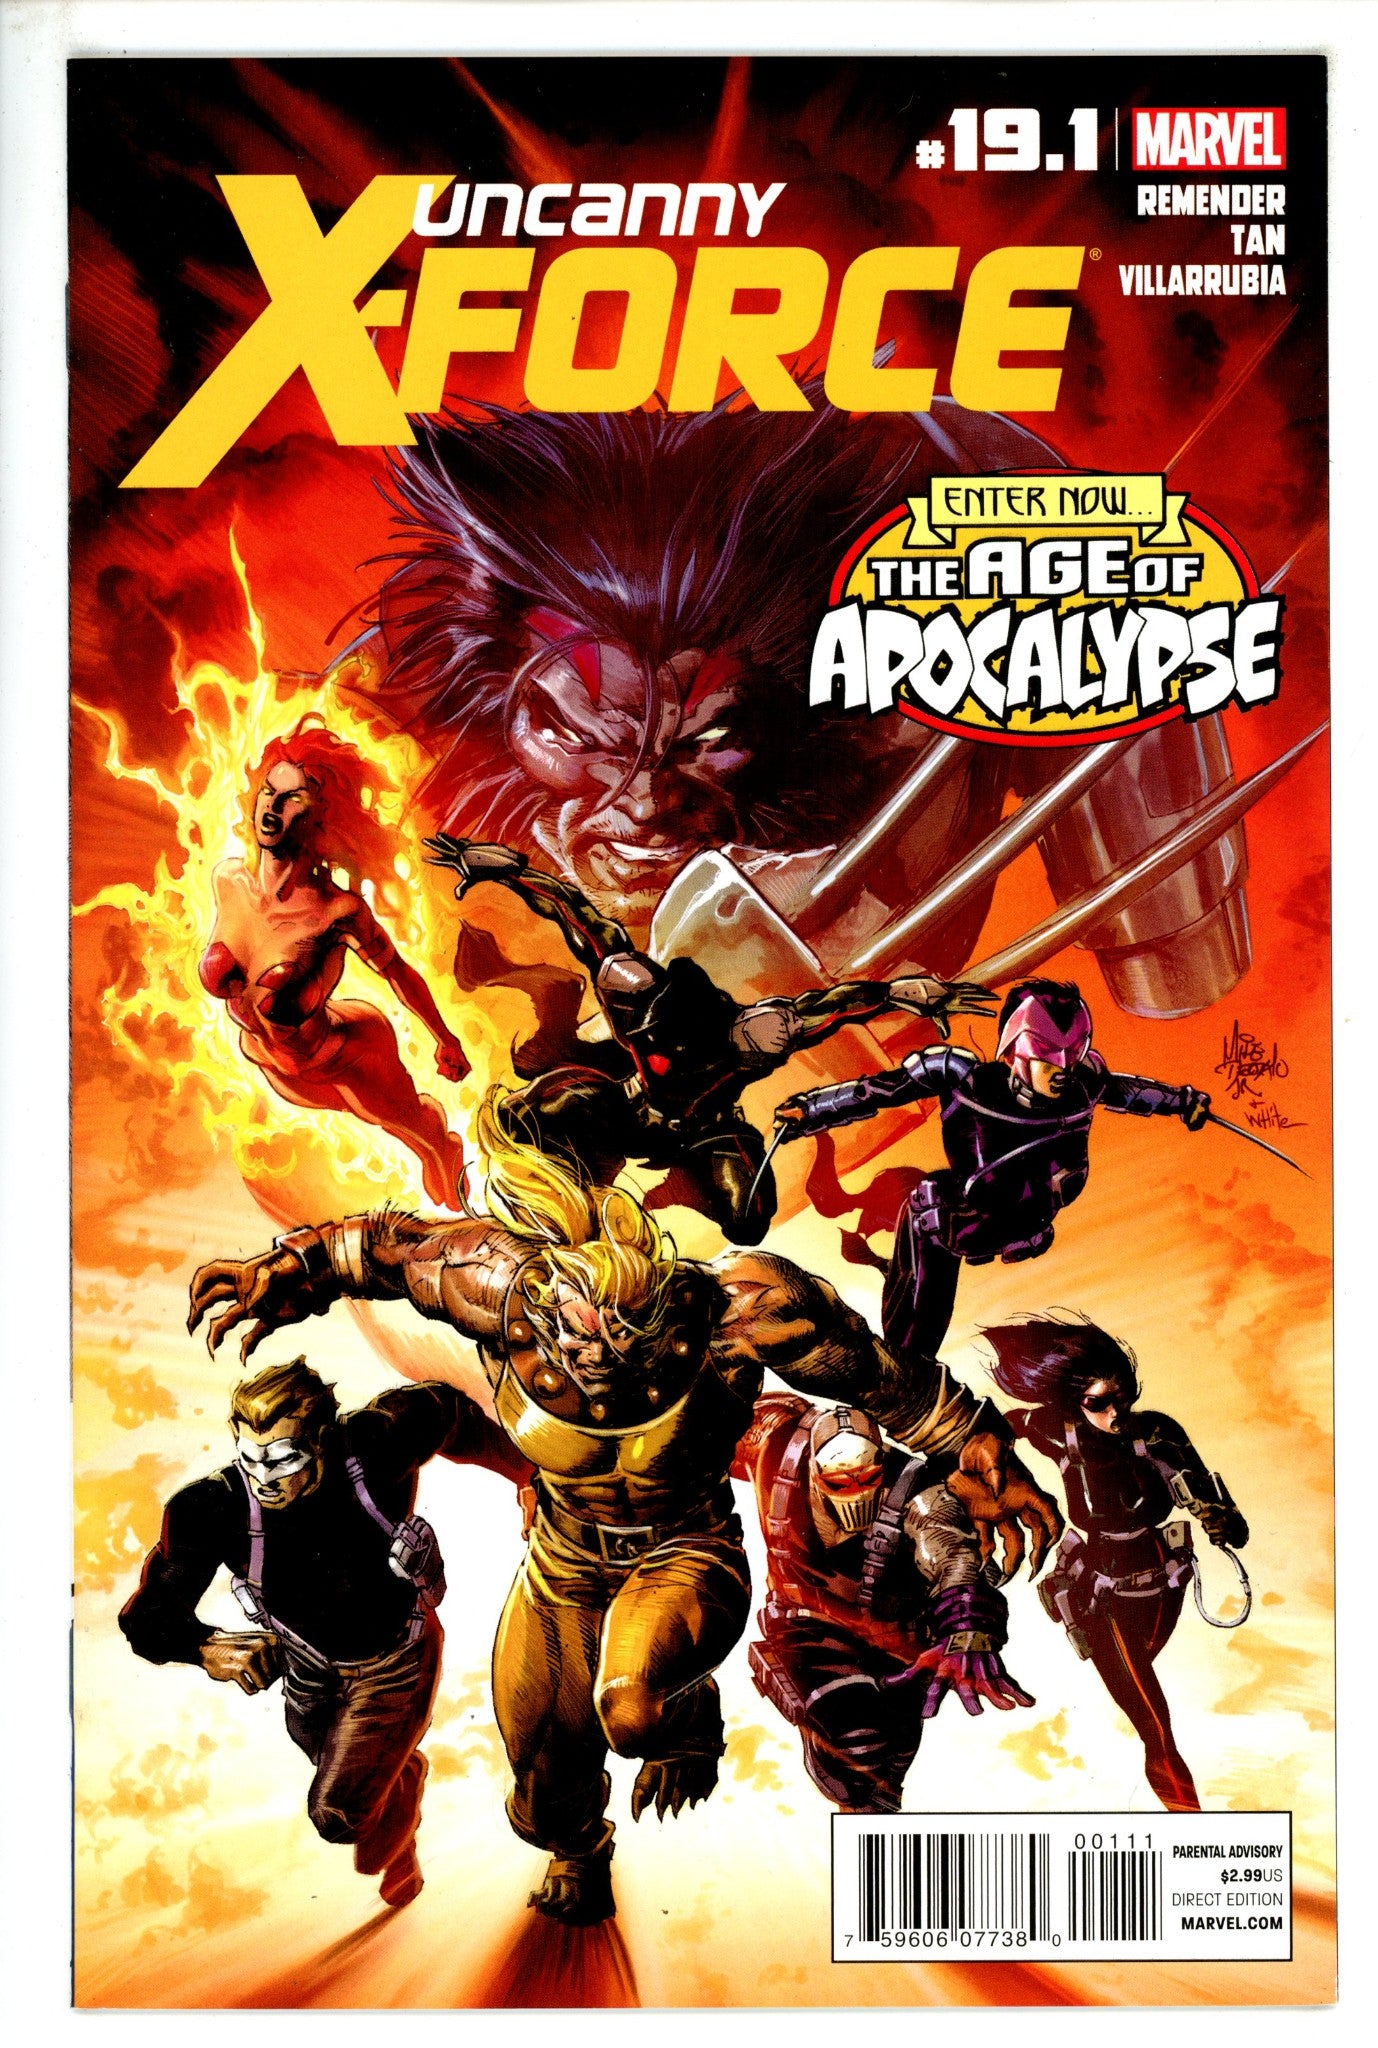 Uncanny X-Force Vol 1 19.1 (2012)